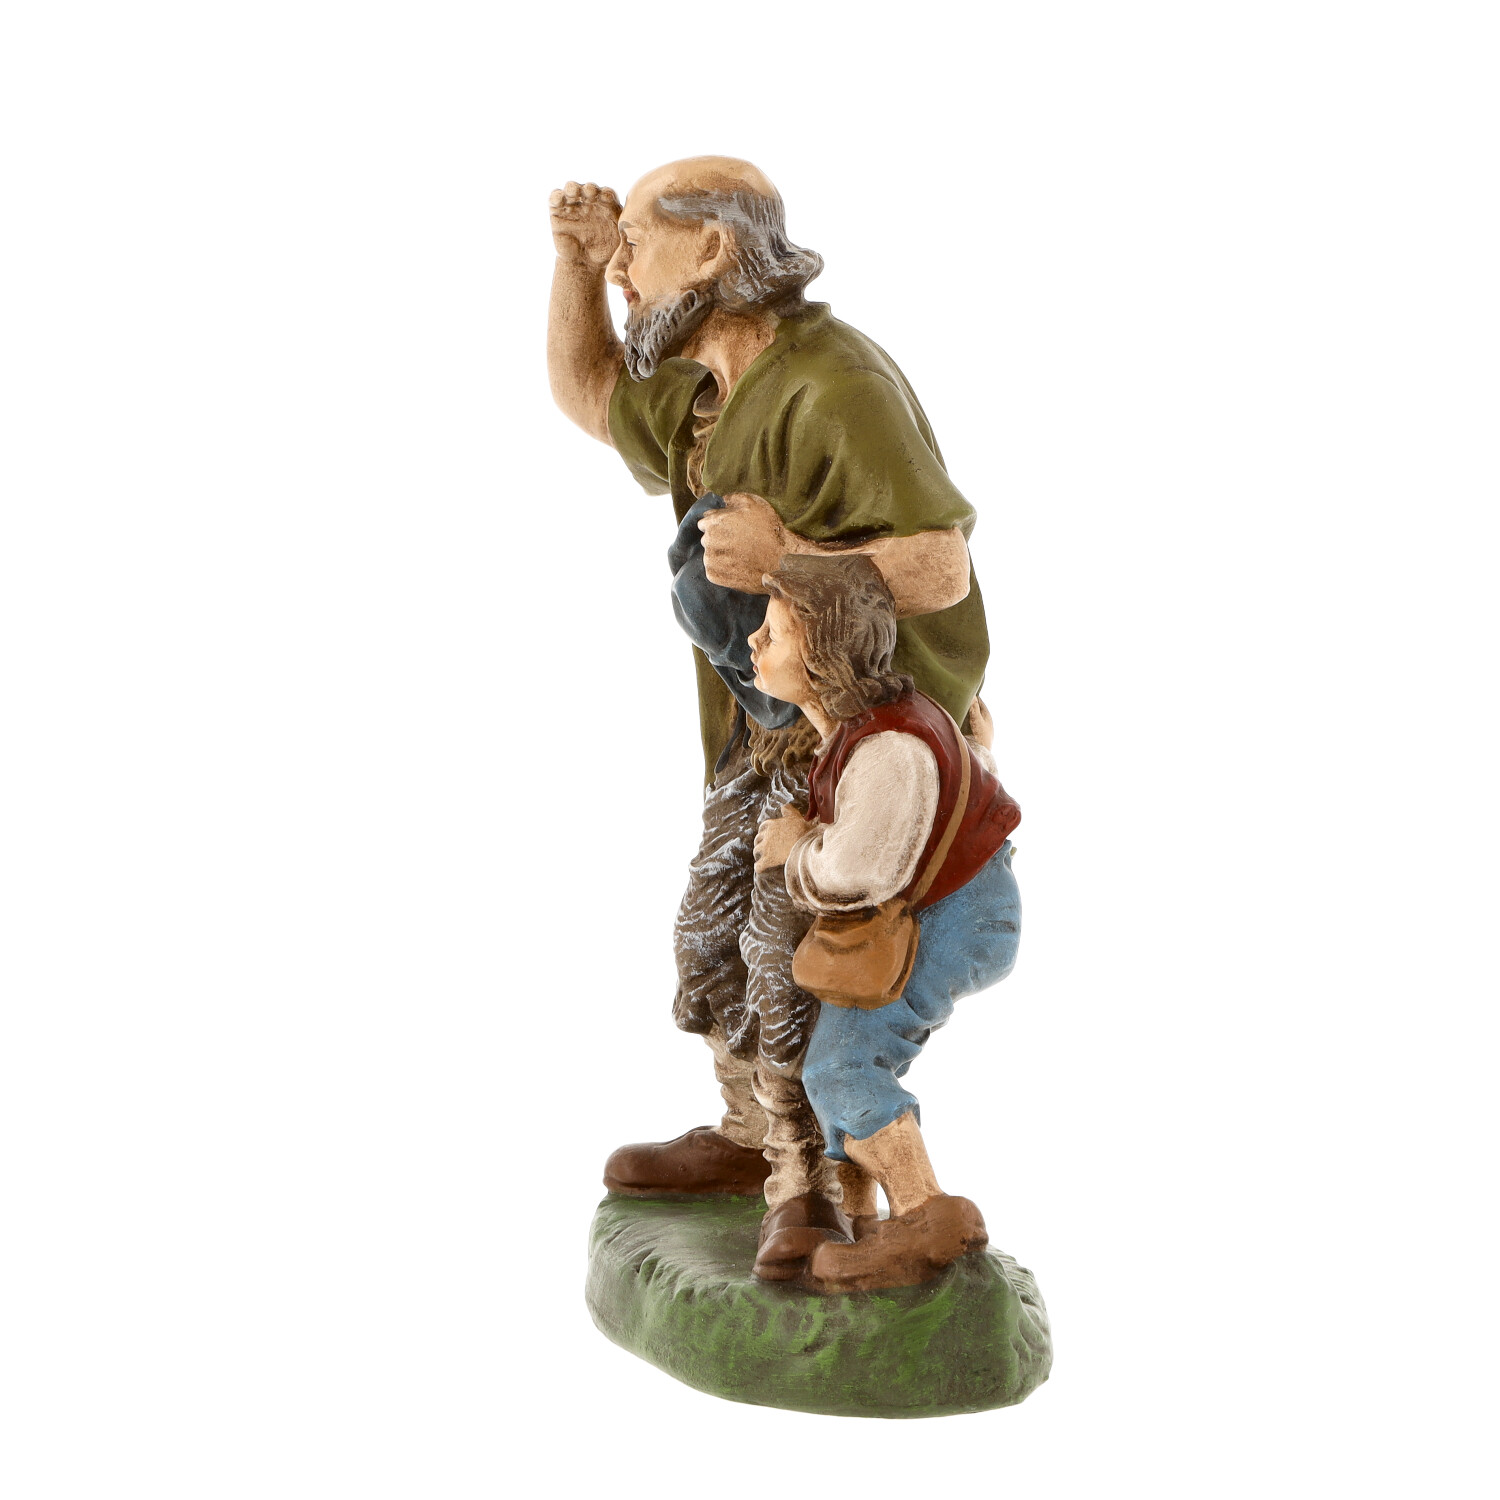 Old shepherd with shepherd boy - Marolin Nativity figure - made in Germany